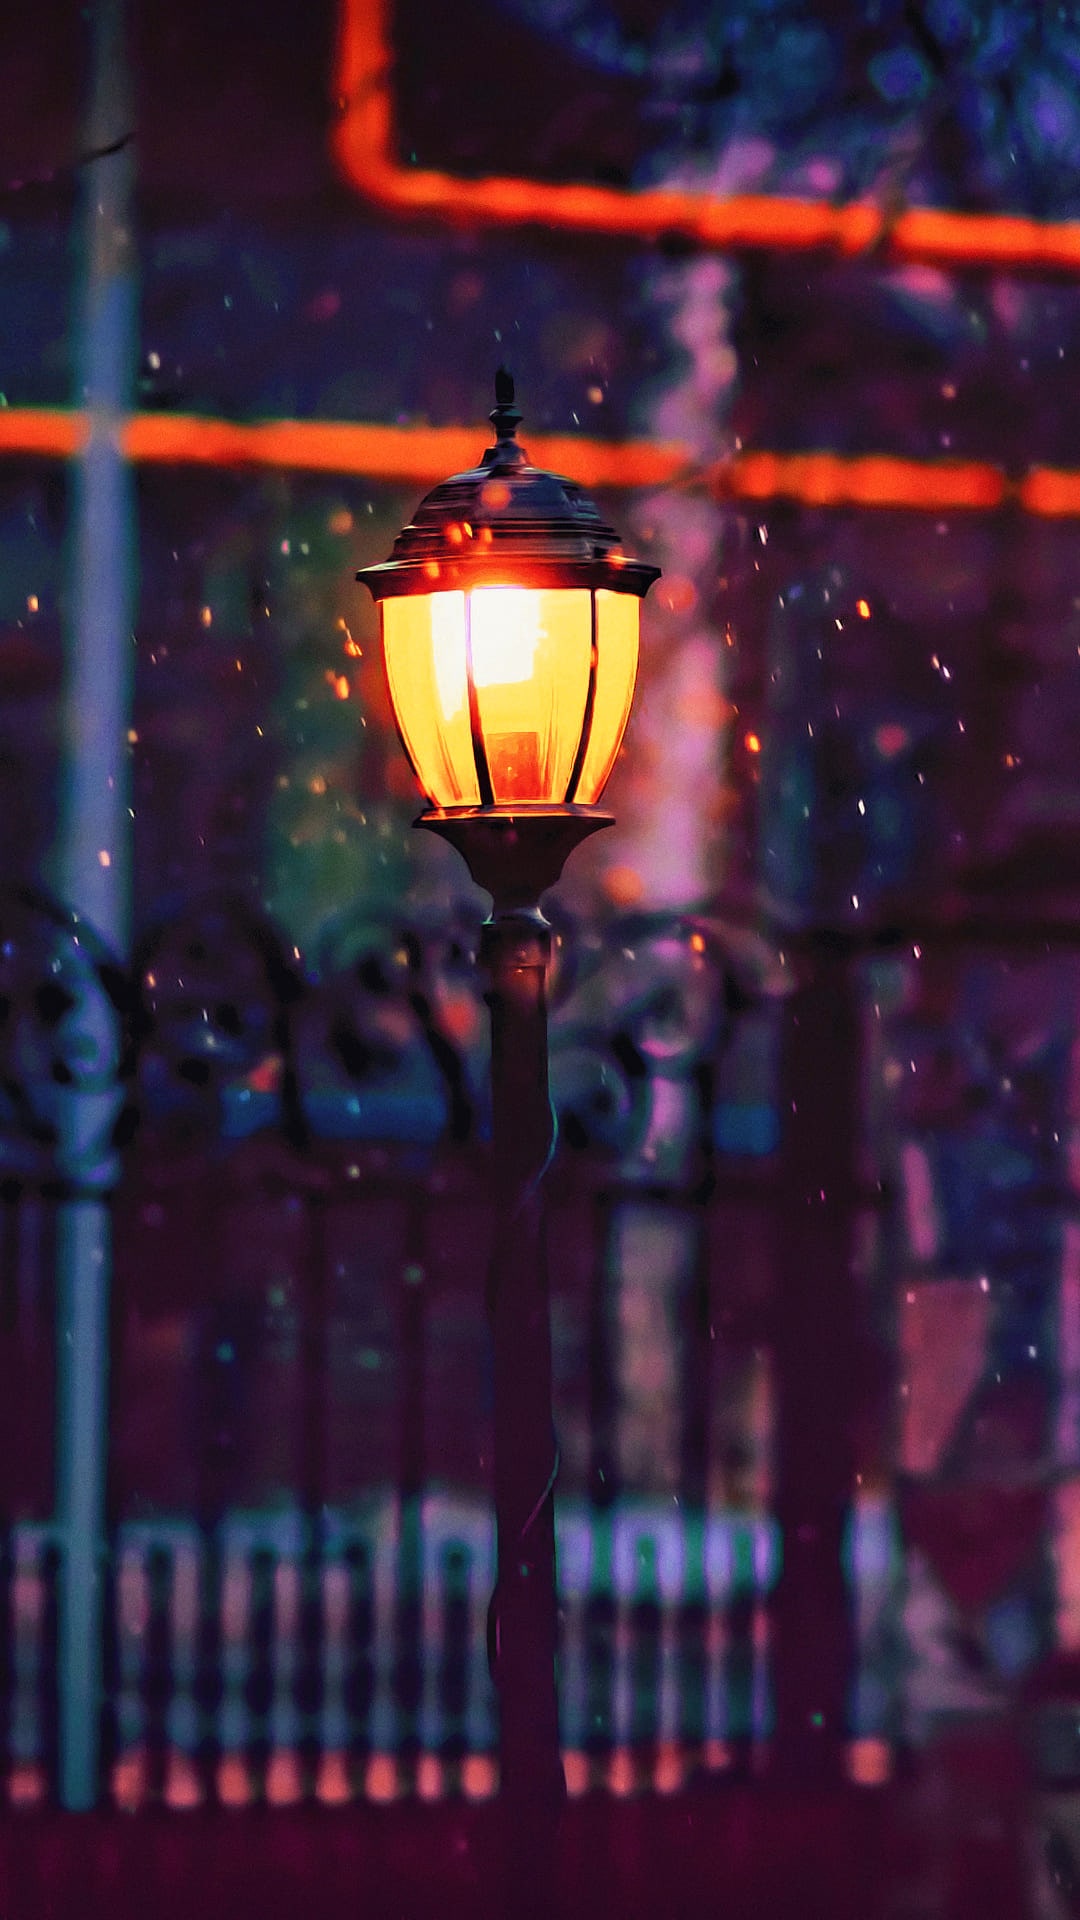 1,000+ Free Street Lamp & Lantern Images - Pixabay